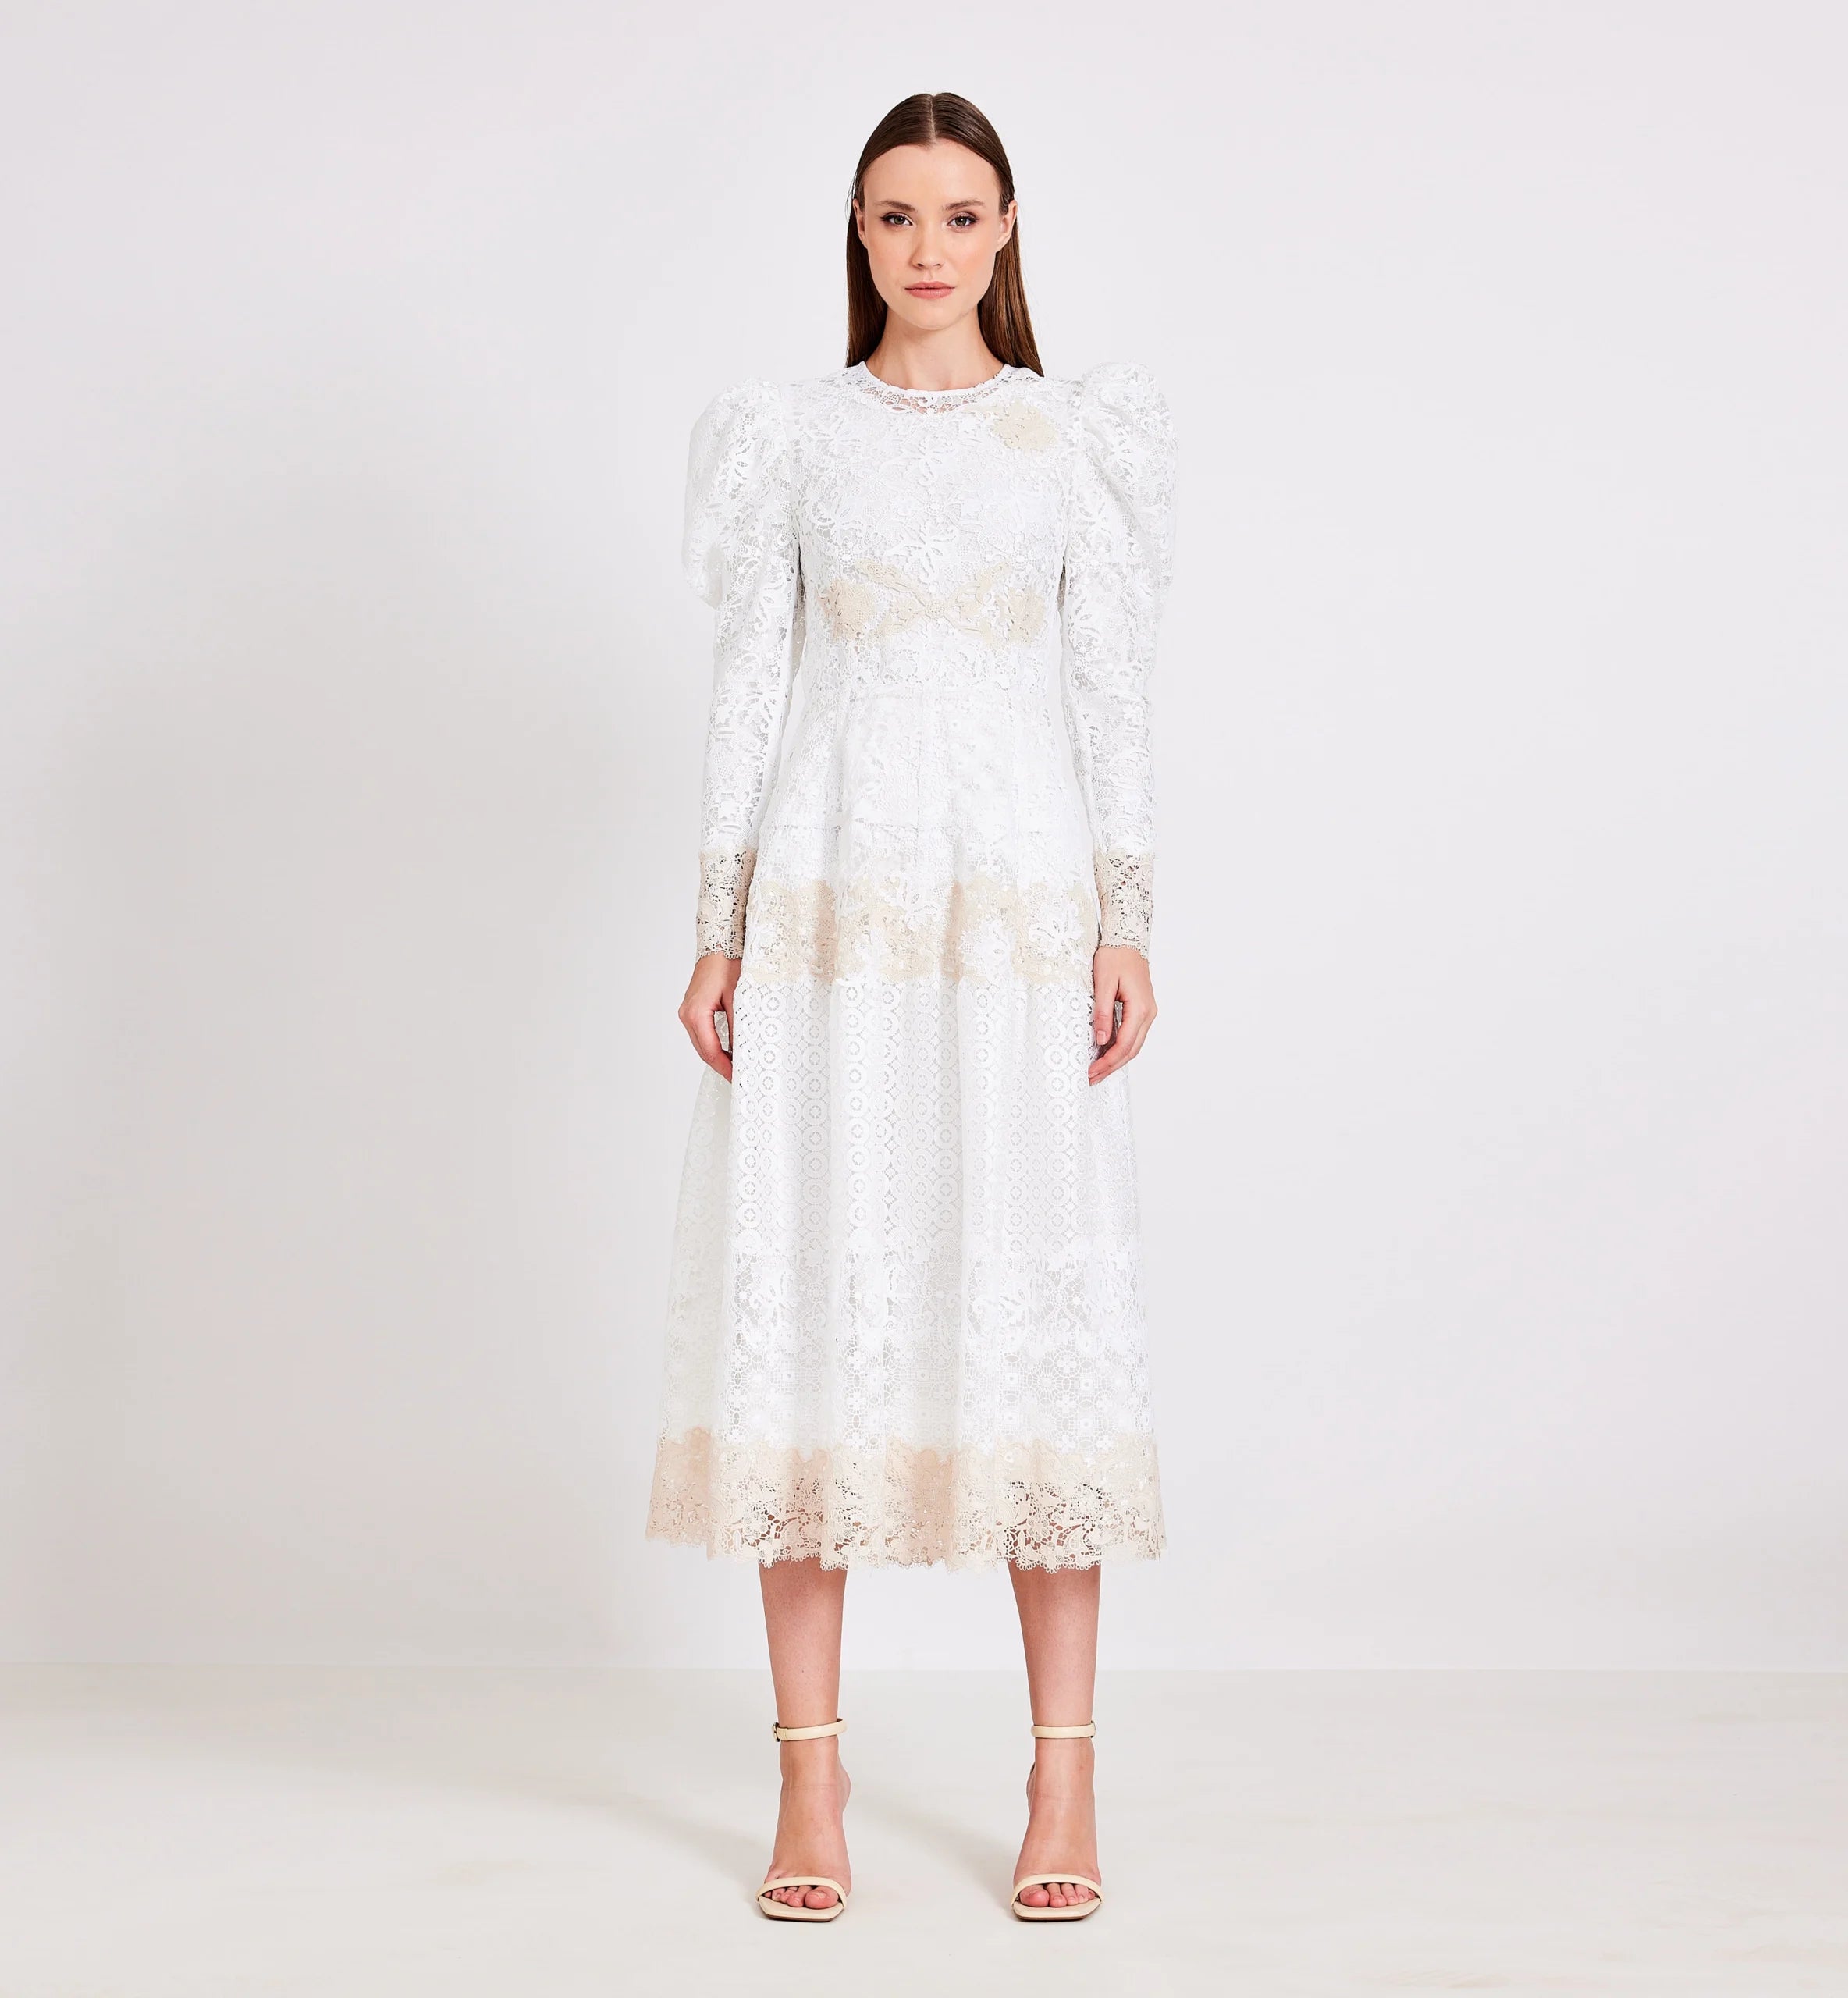 Lace Combination Midi Dress in Biege & White